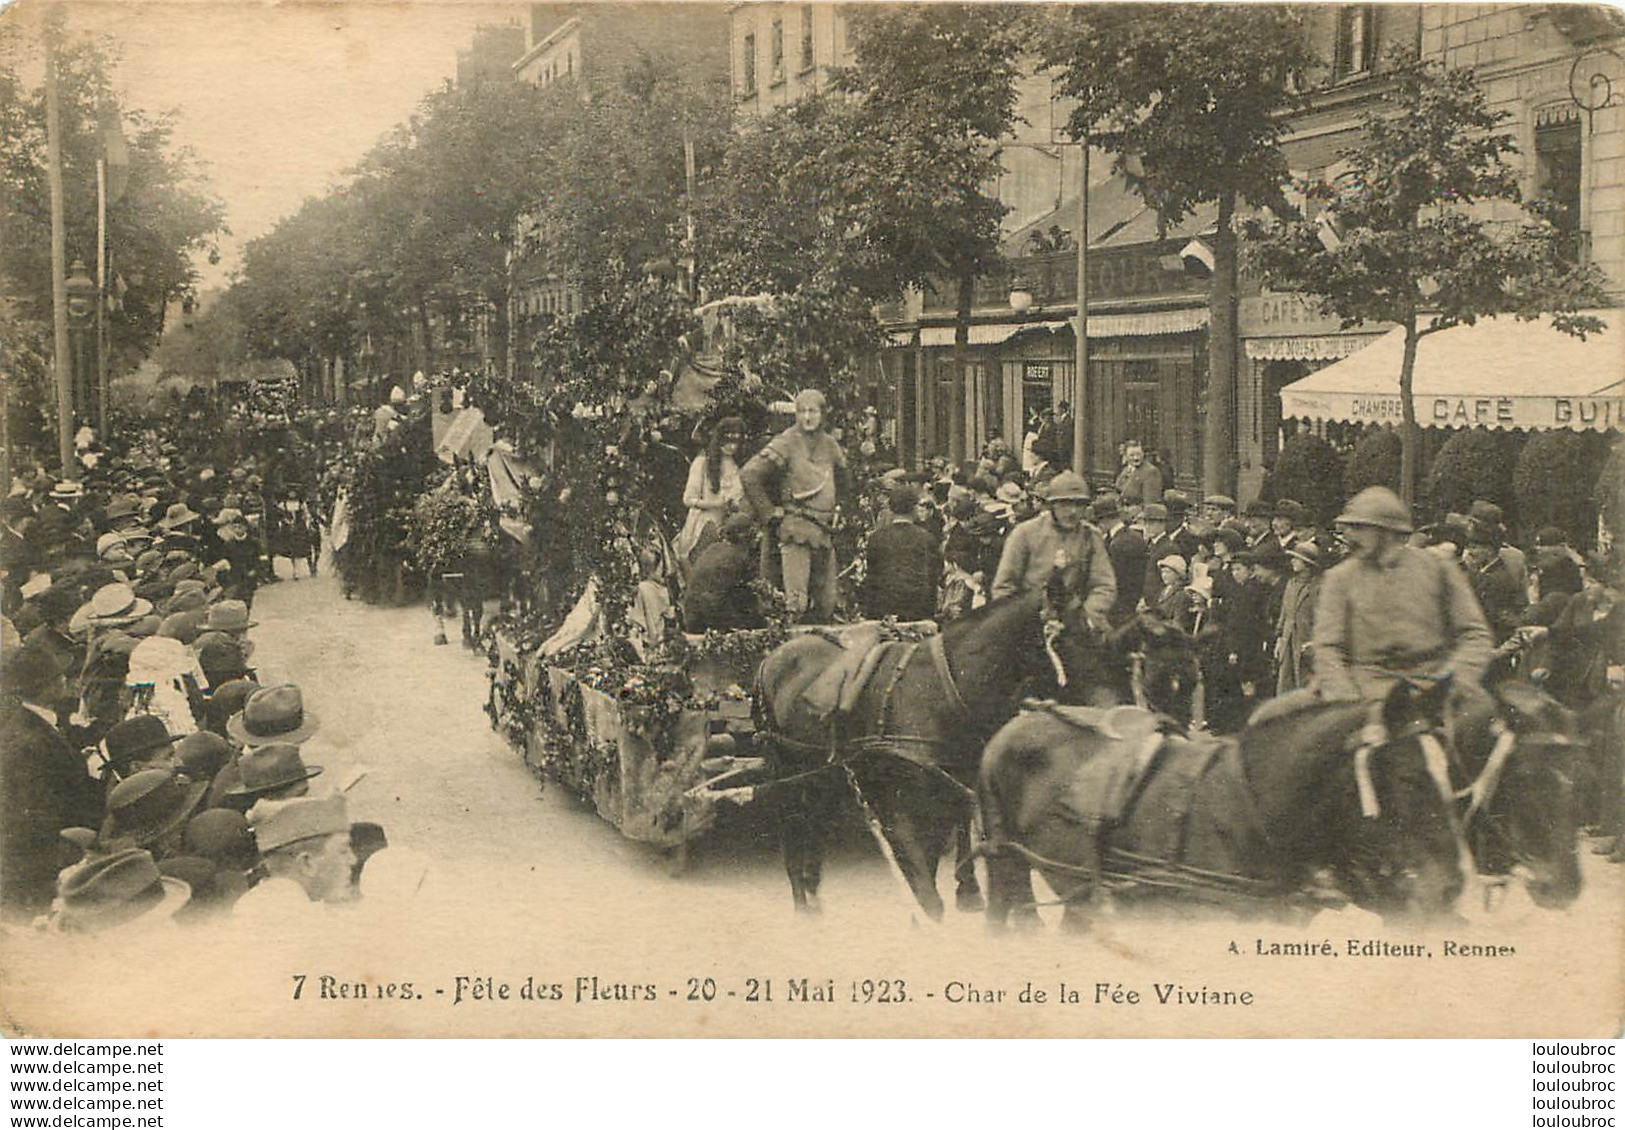 RENNES FETE DES FLEURS 1923 CHAR DE LA FEE VIVIANE - Rennes